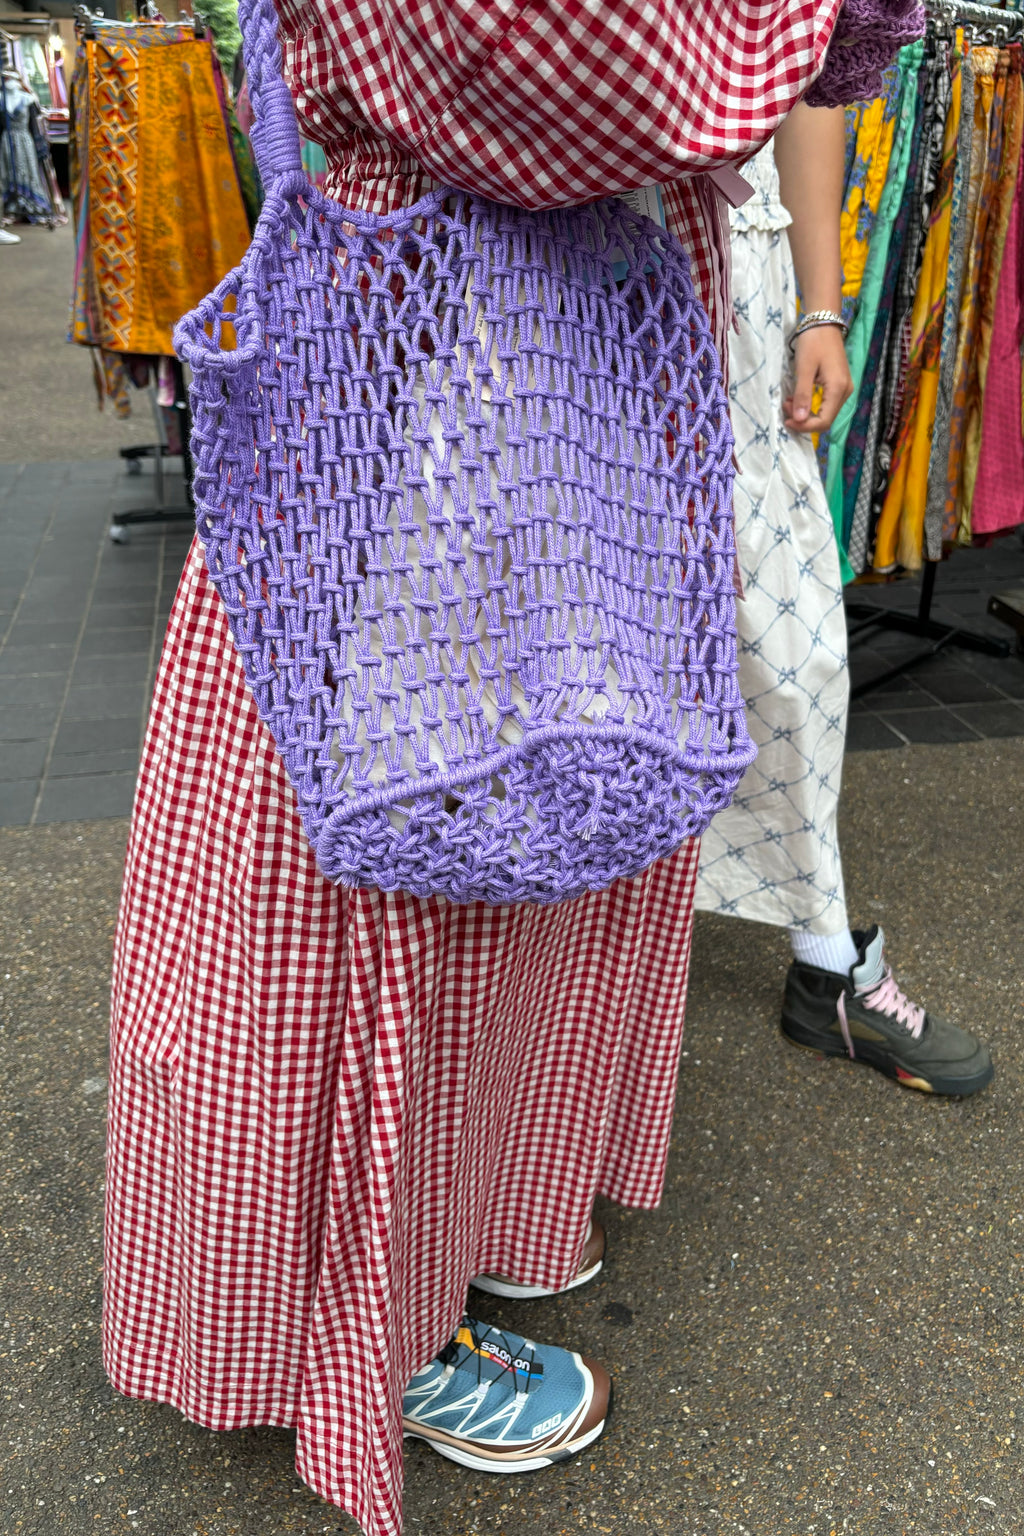 Compania Fantastica Lilac Shopper Bag